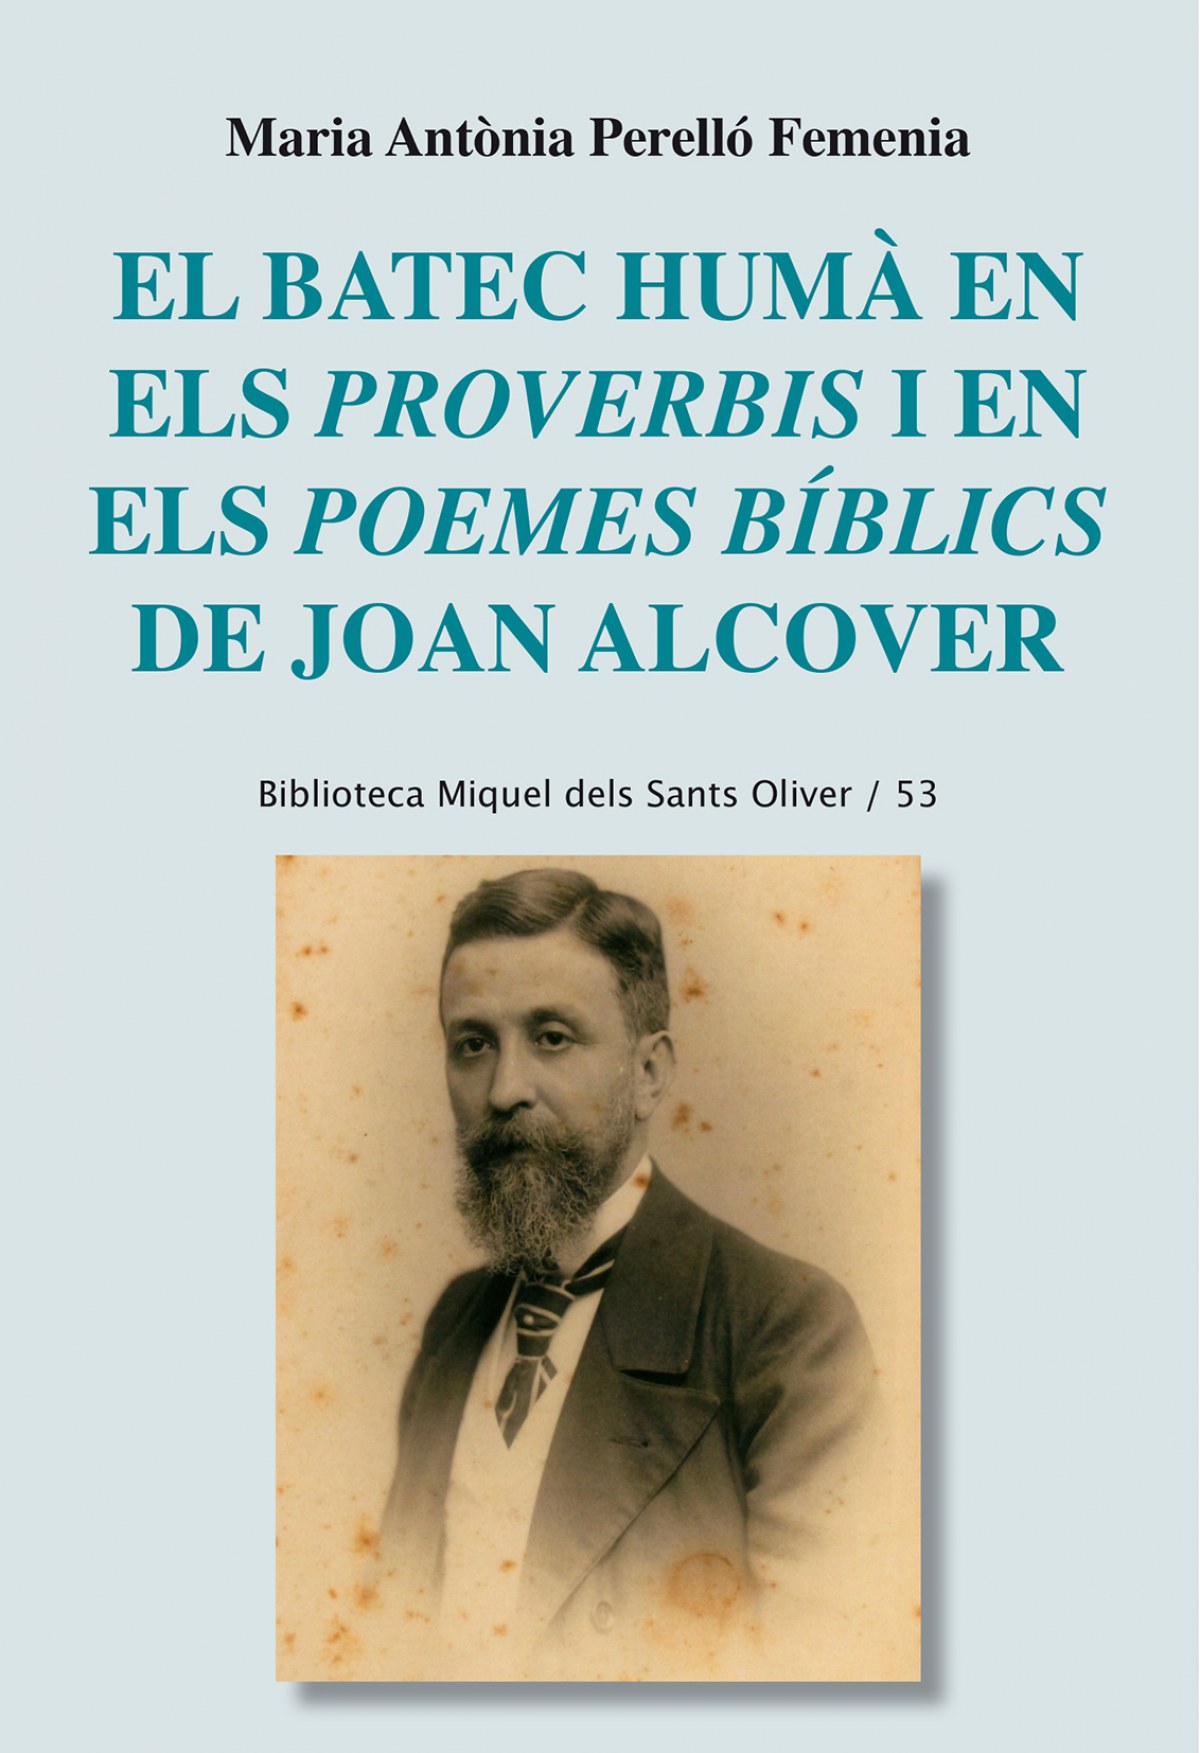 El batec humÁ en els proverbis i en poemes bÍblics joan alcover - Perello Femenia, Maria Antonia